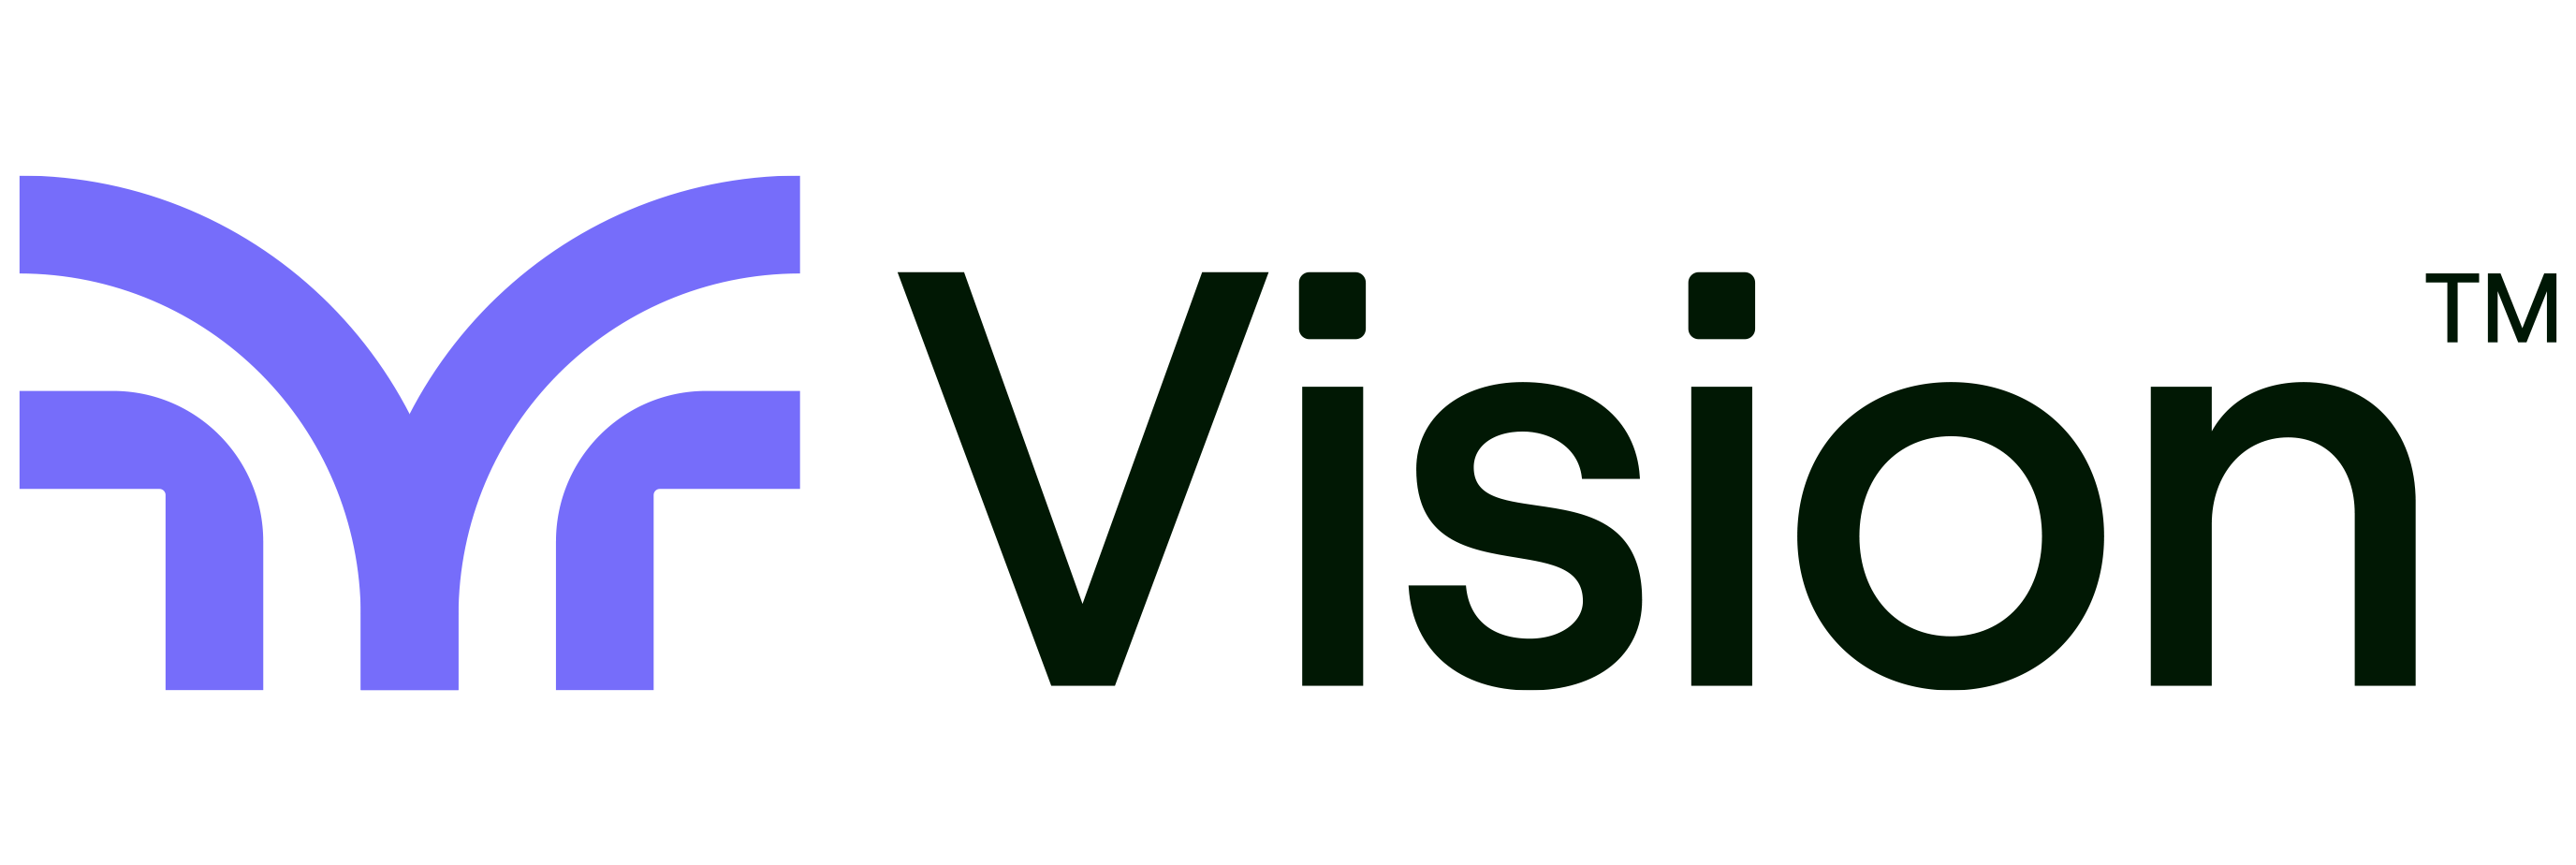 Vision logo in full color